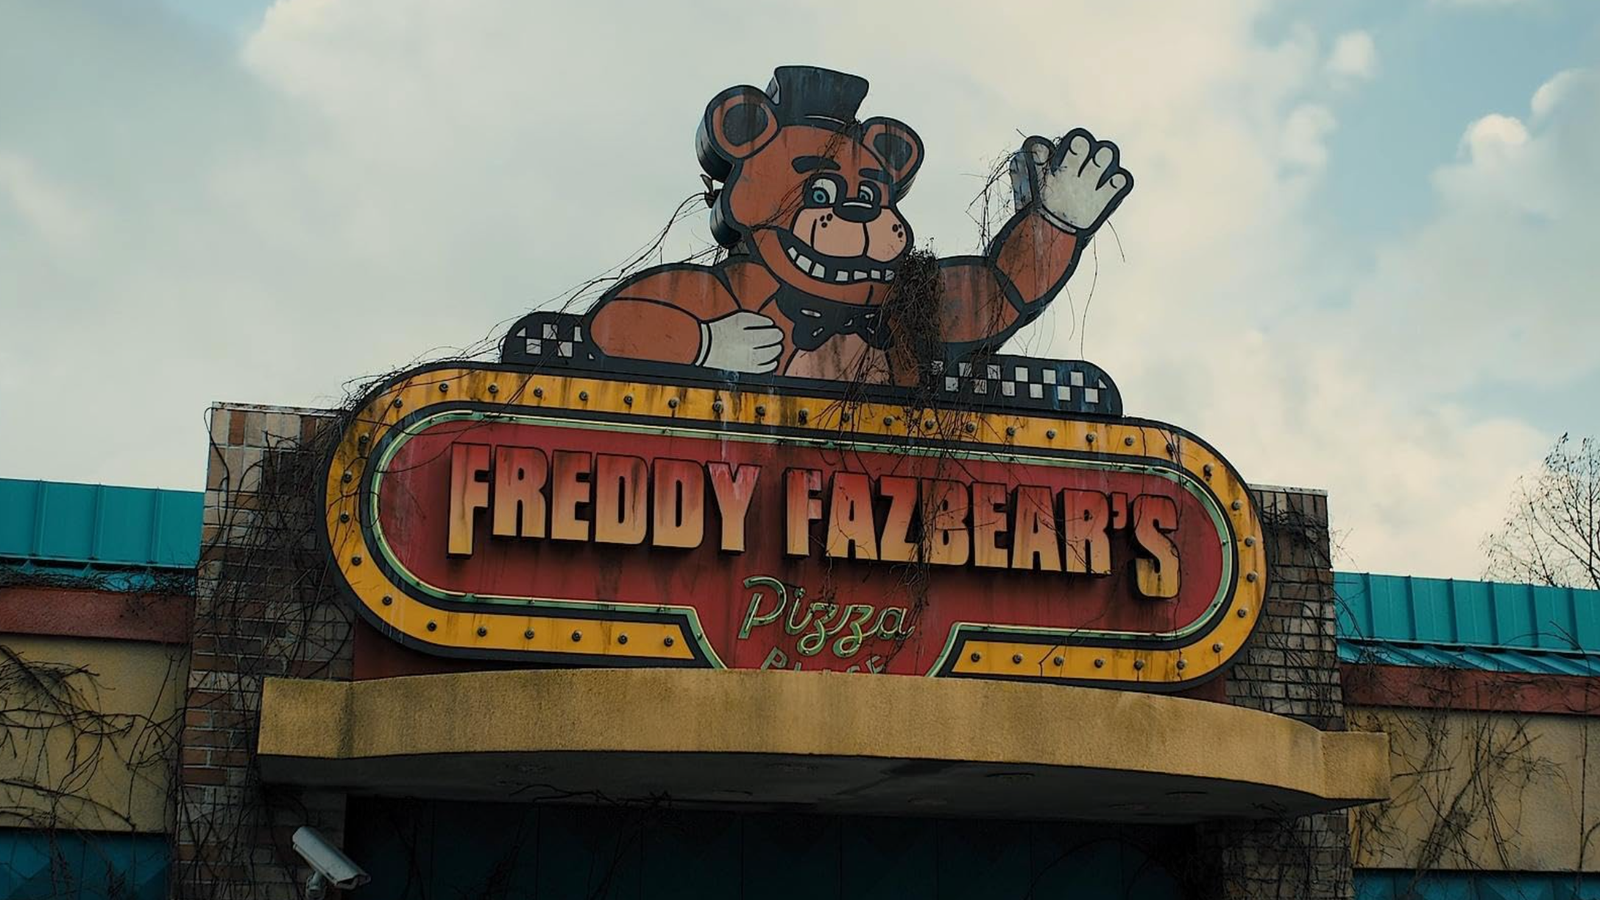 Novo Five Nights at Freddy's já está disponível